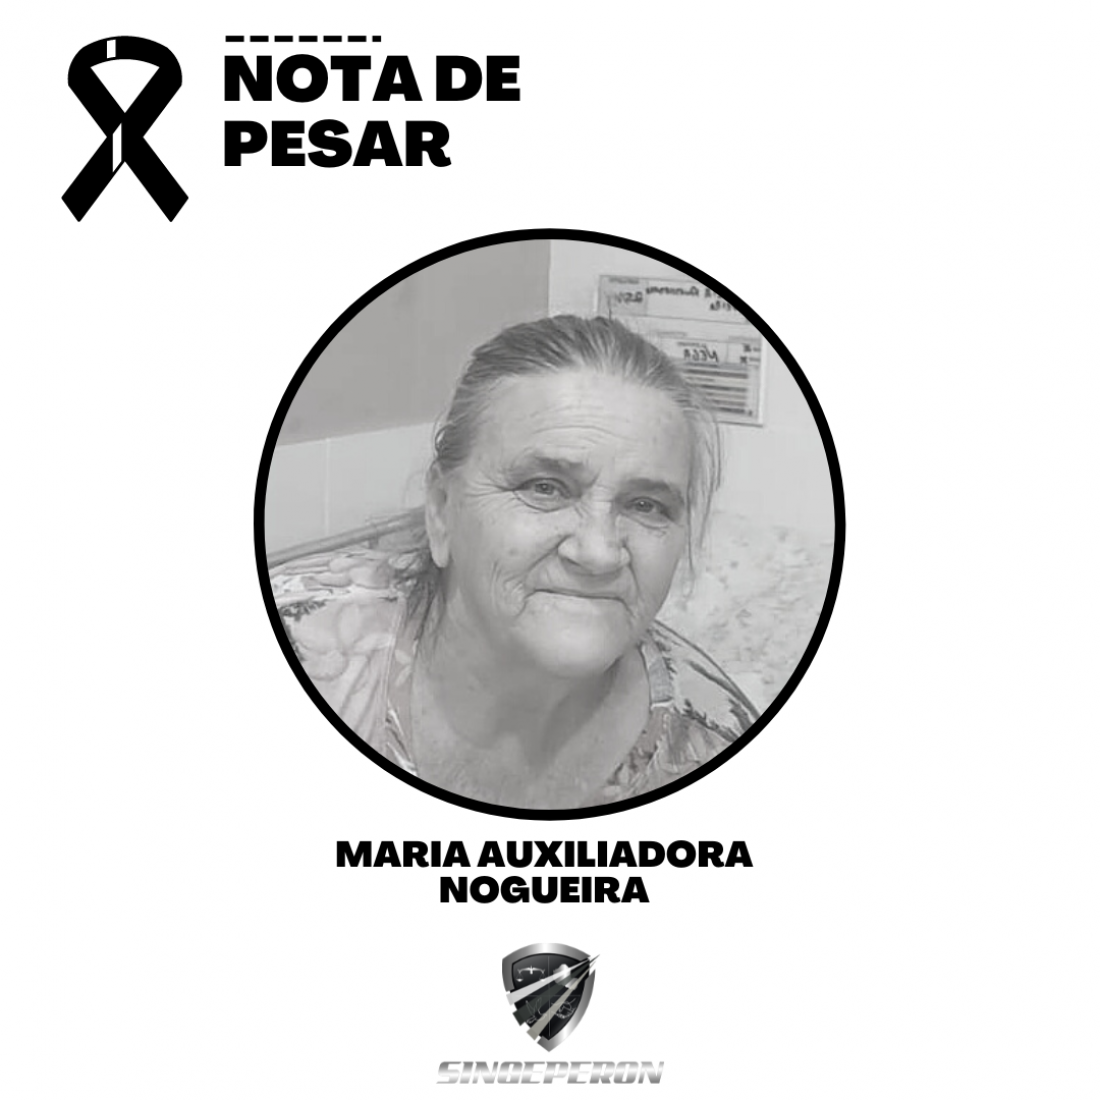 Nota de pesar: MARIA AUXILIADORA NOGUEIRA